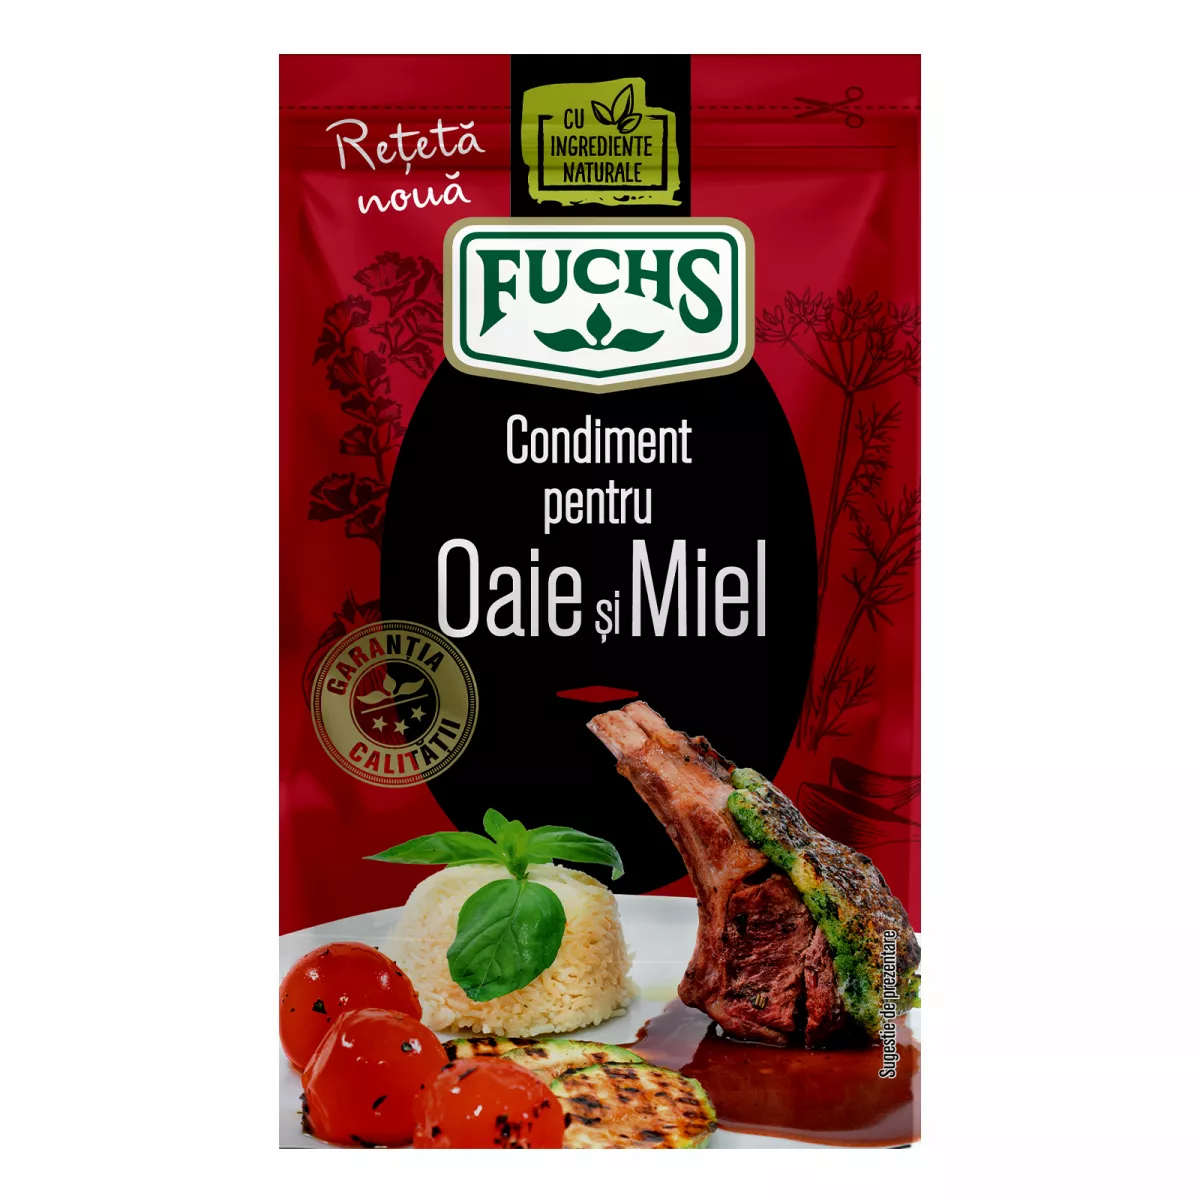 Condiment oaie-miel, Fuchs, 20g